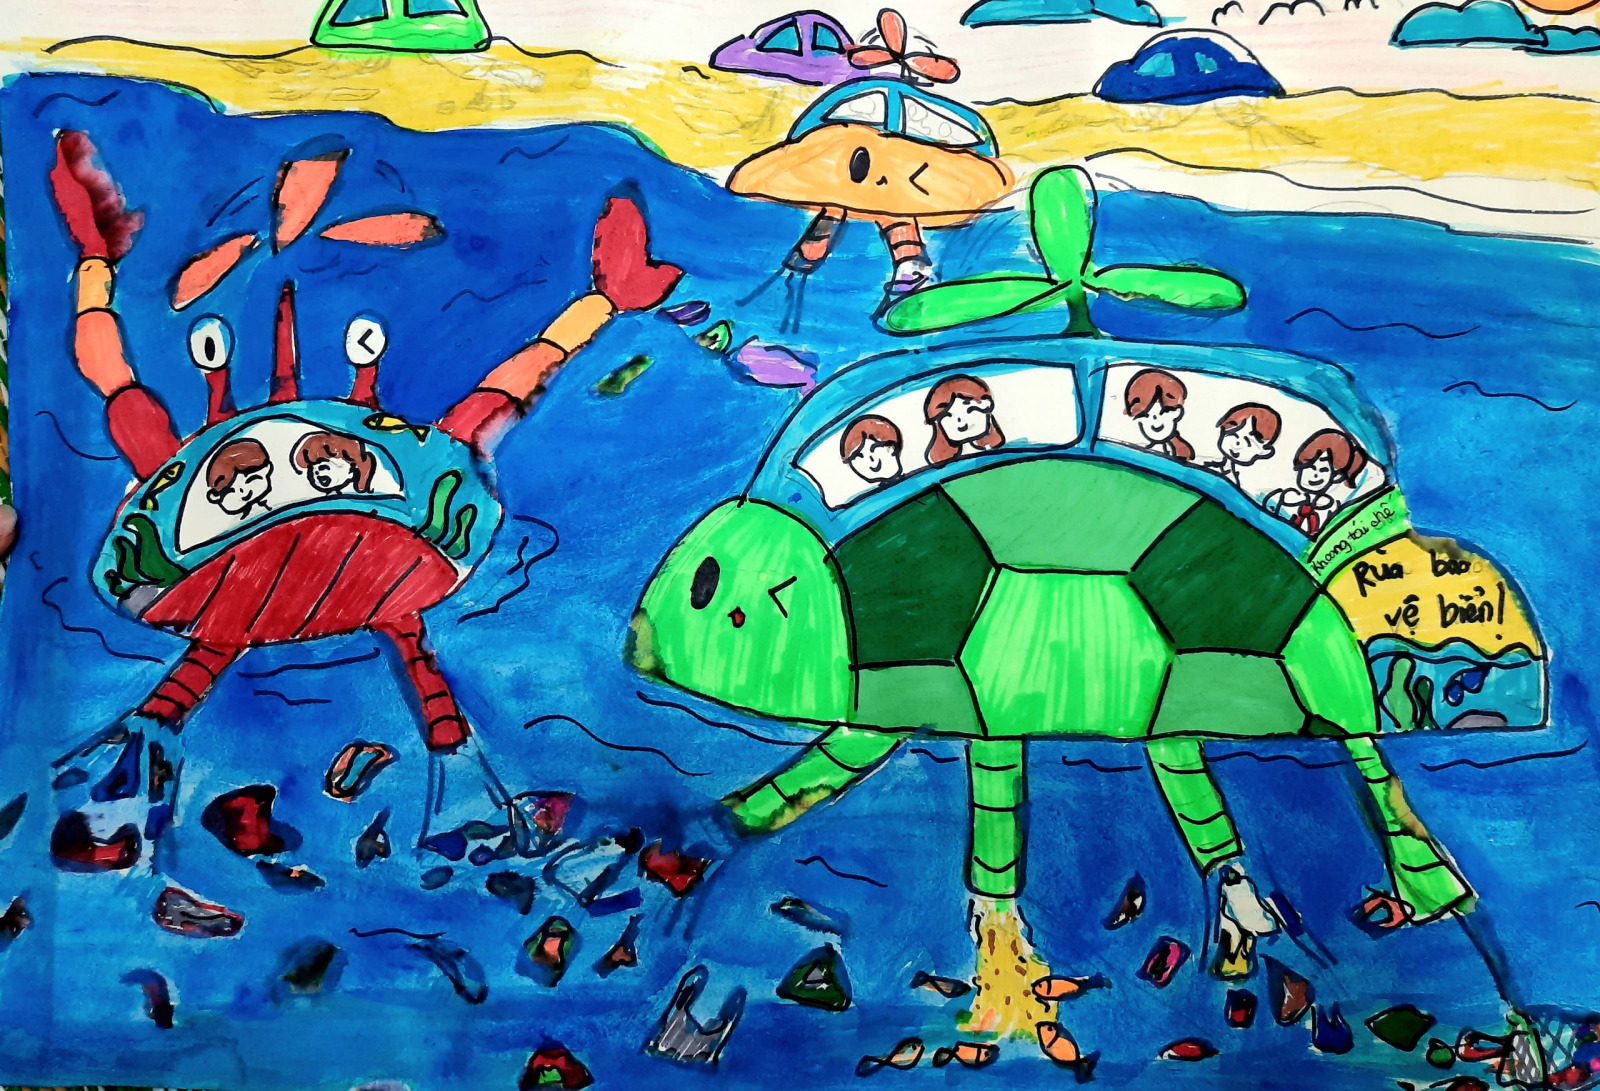 Chăm sóc nước trong tranh vẽ: Nghệ thuật và sự giáo dục cho tương lai